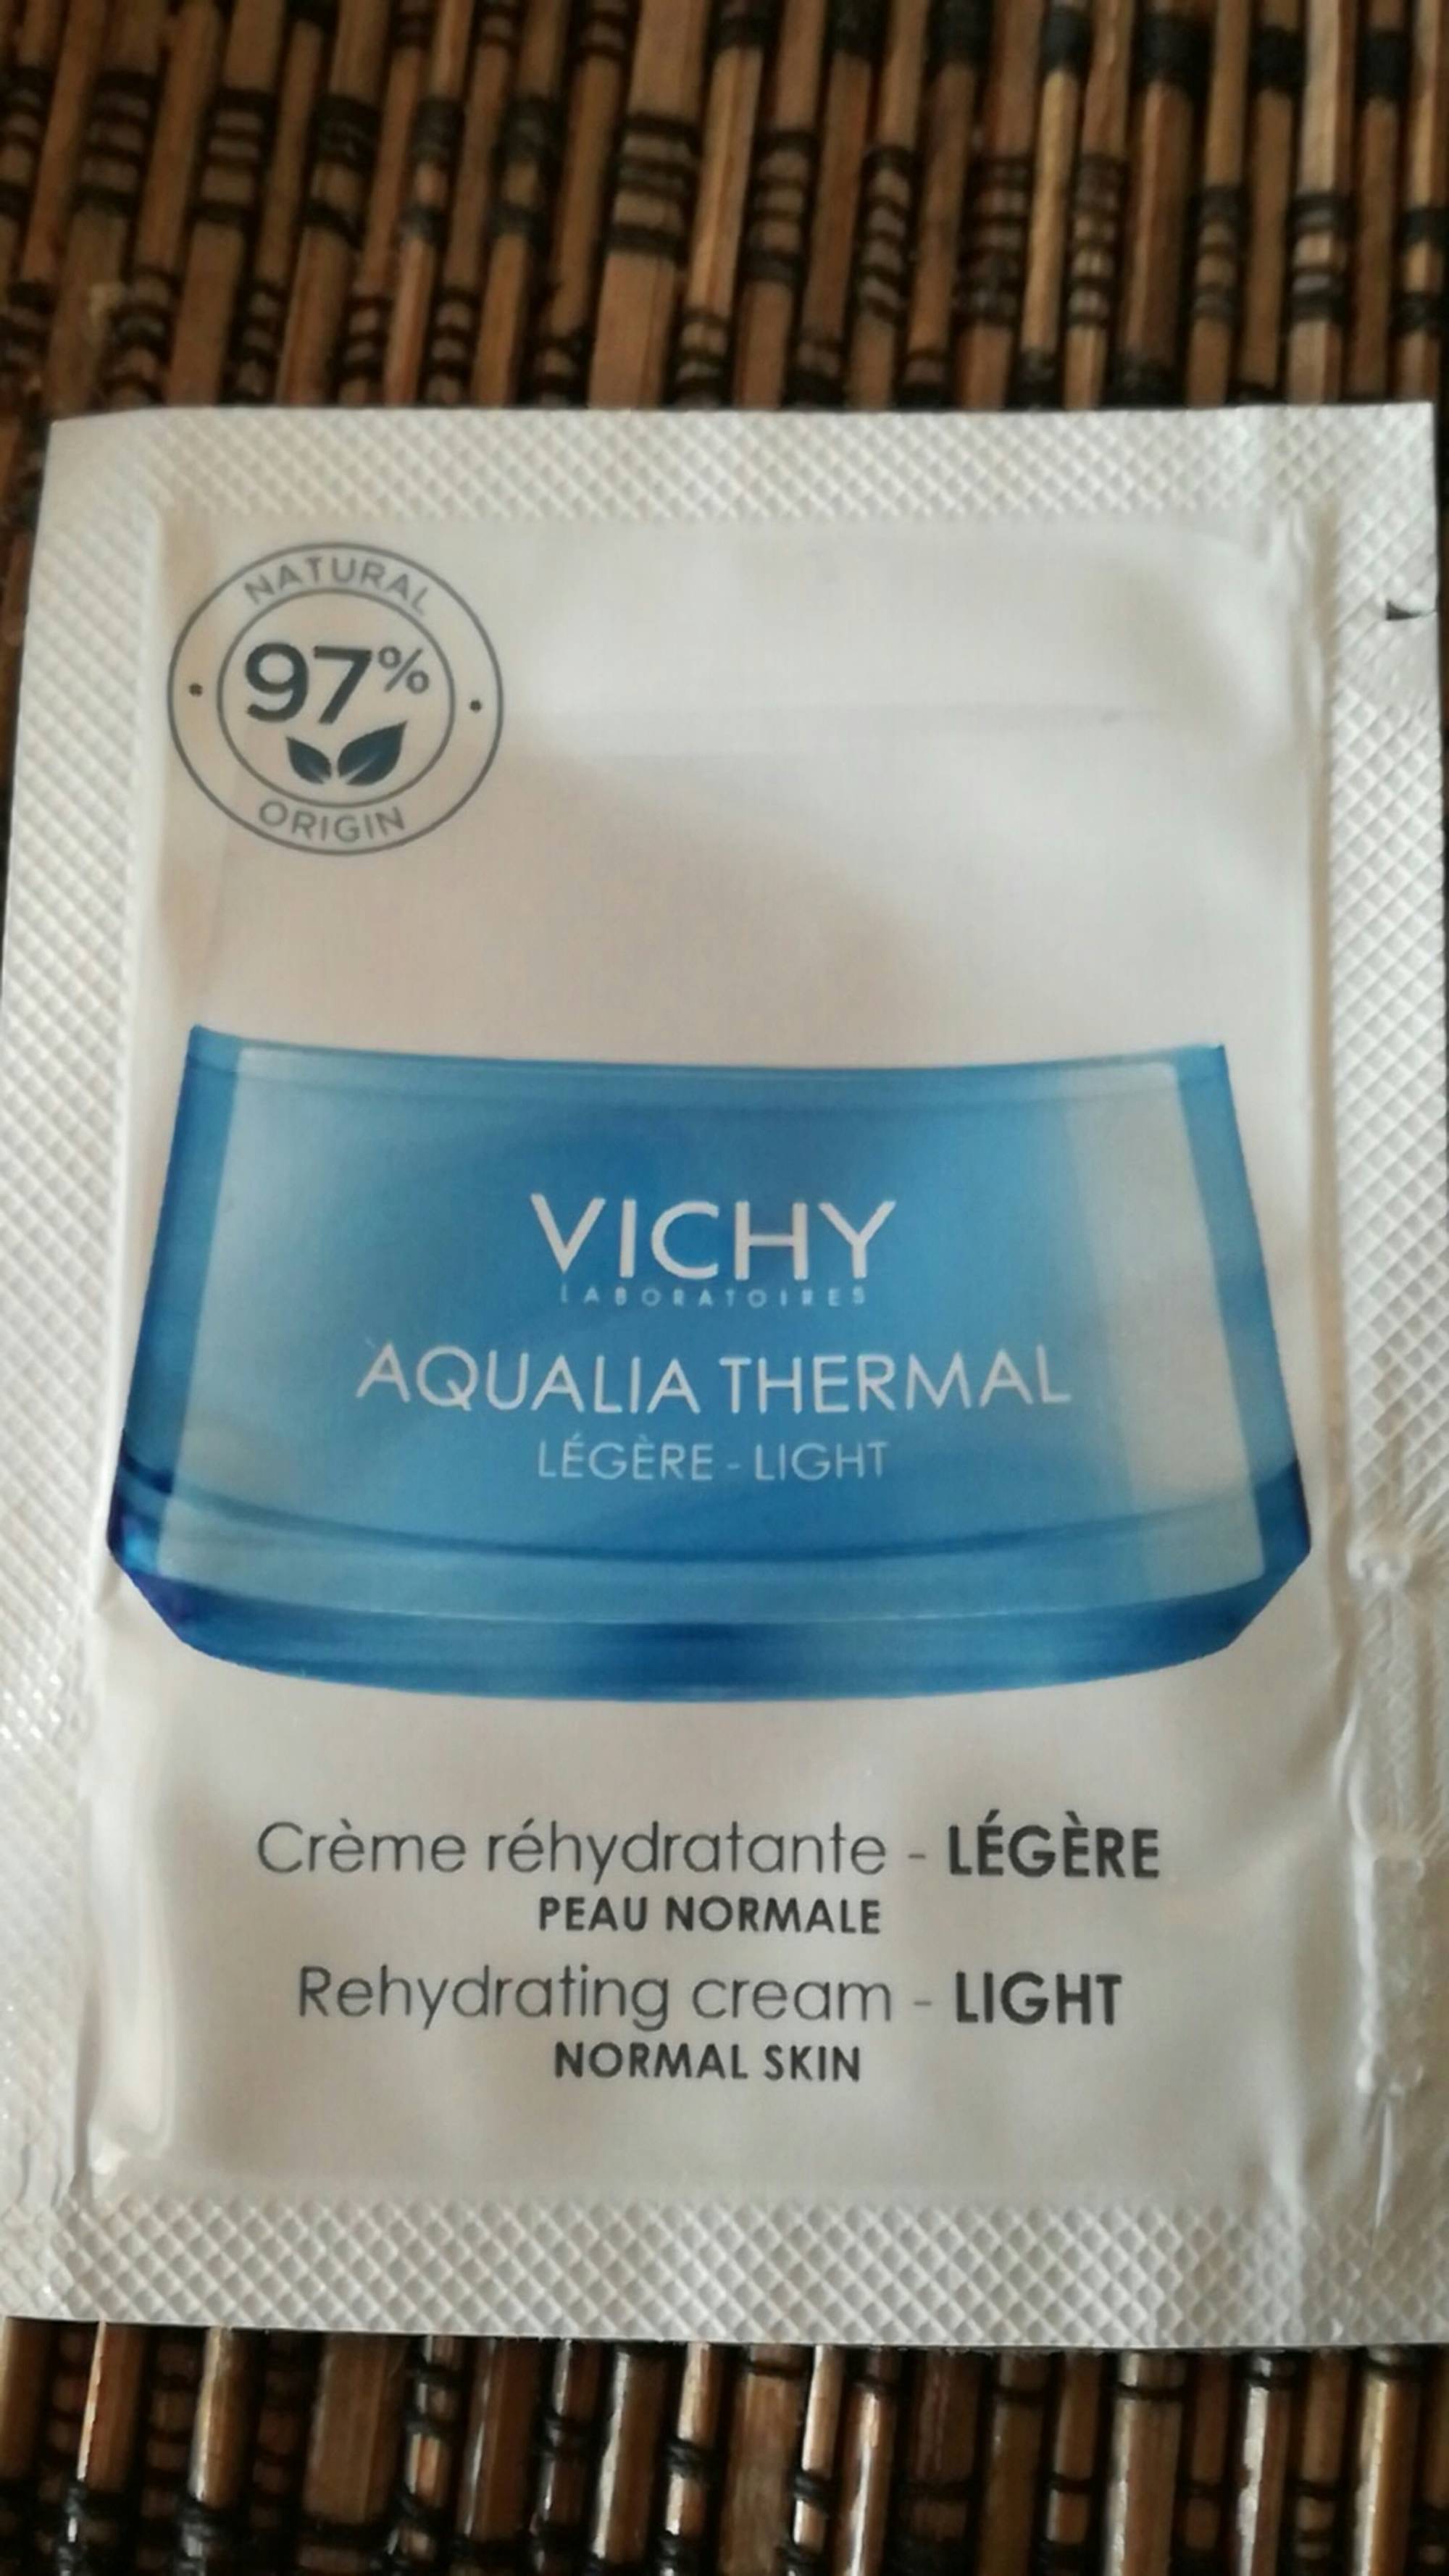 VICHY - Aqualia thermal - Crème réhydratante légère 